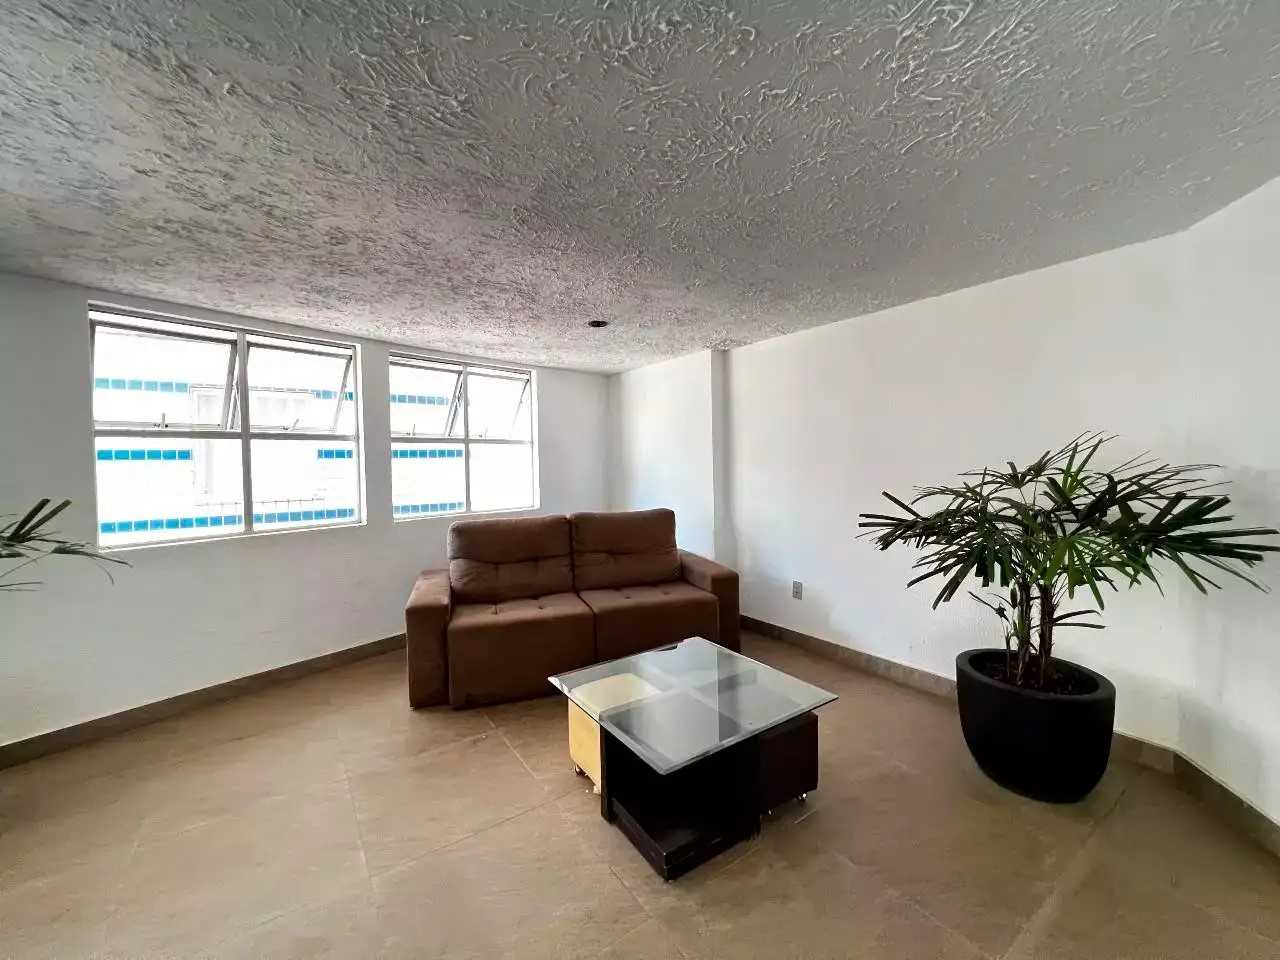 Apartamento, 3 quartos, 80 m² - Foto 2